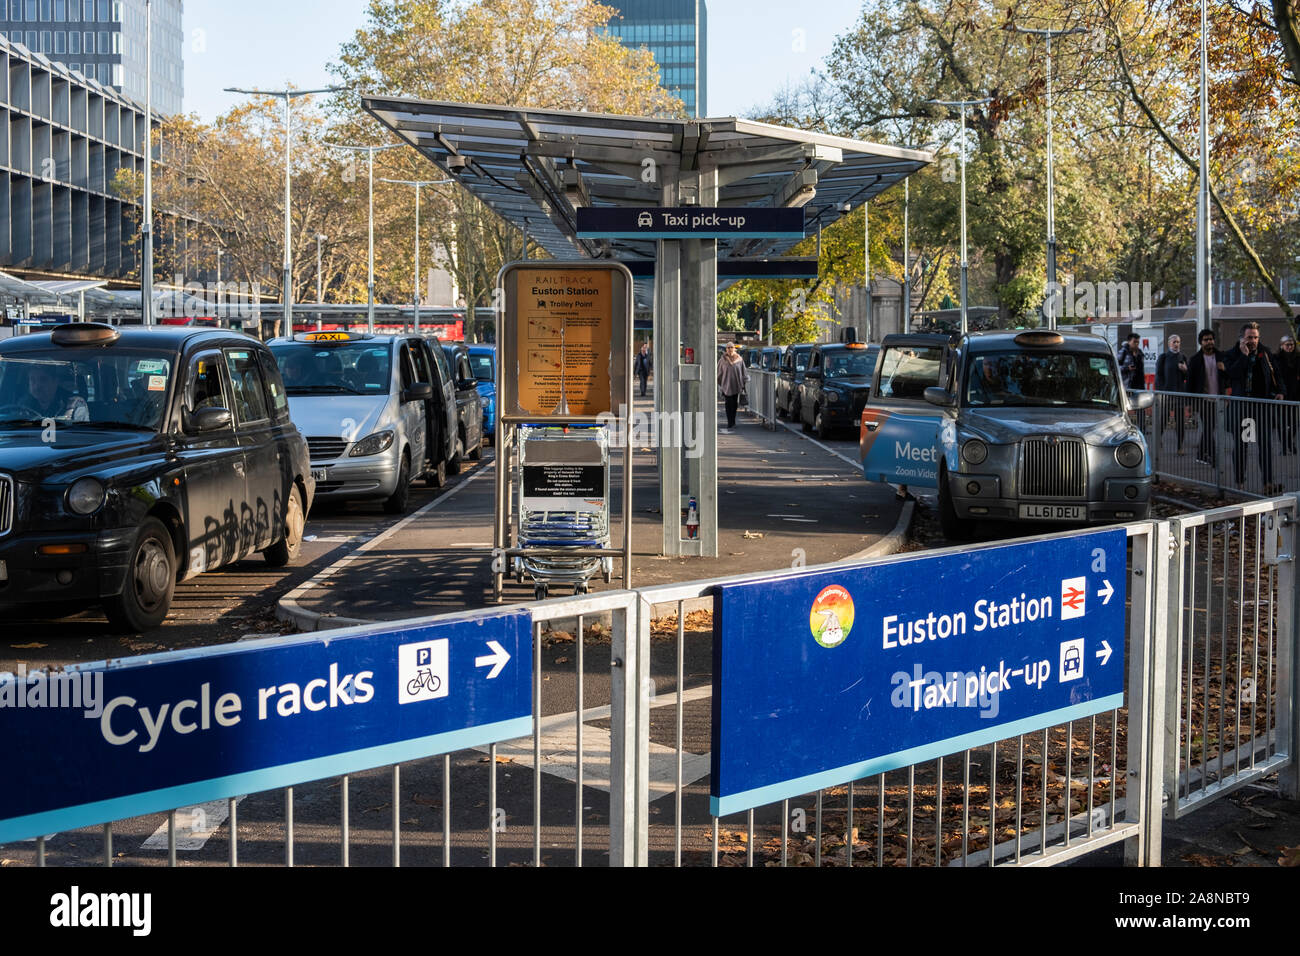 La estación Euston con nuevas paradas de taxi en la parte delantera, Londres, Inglaterra, Reino Unido. Foto de stock